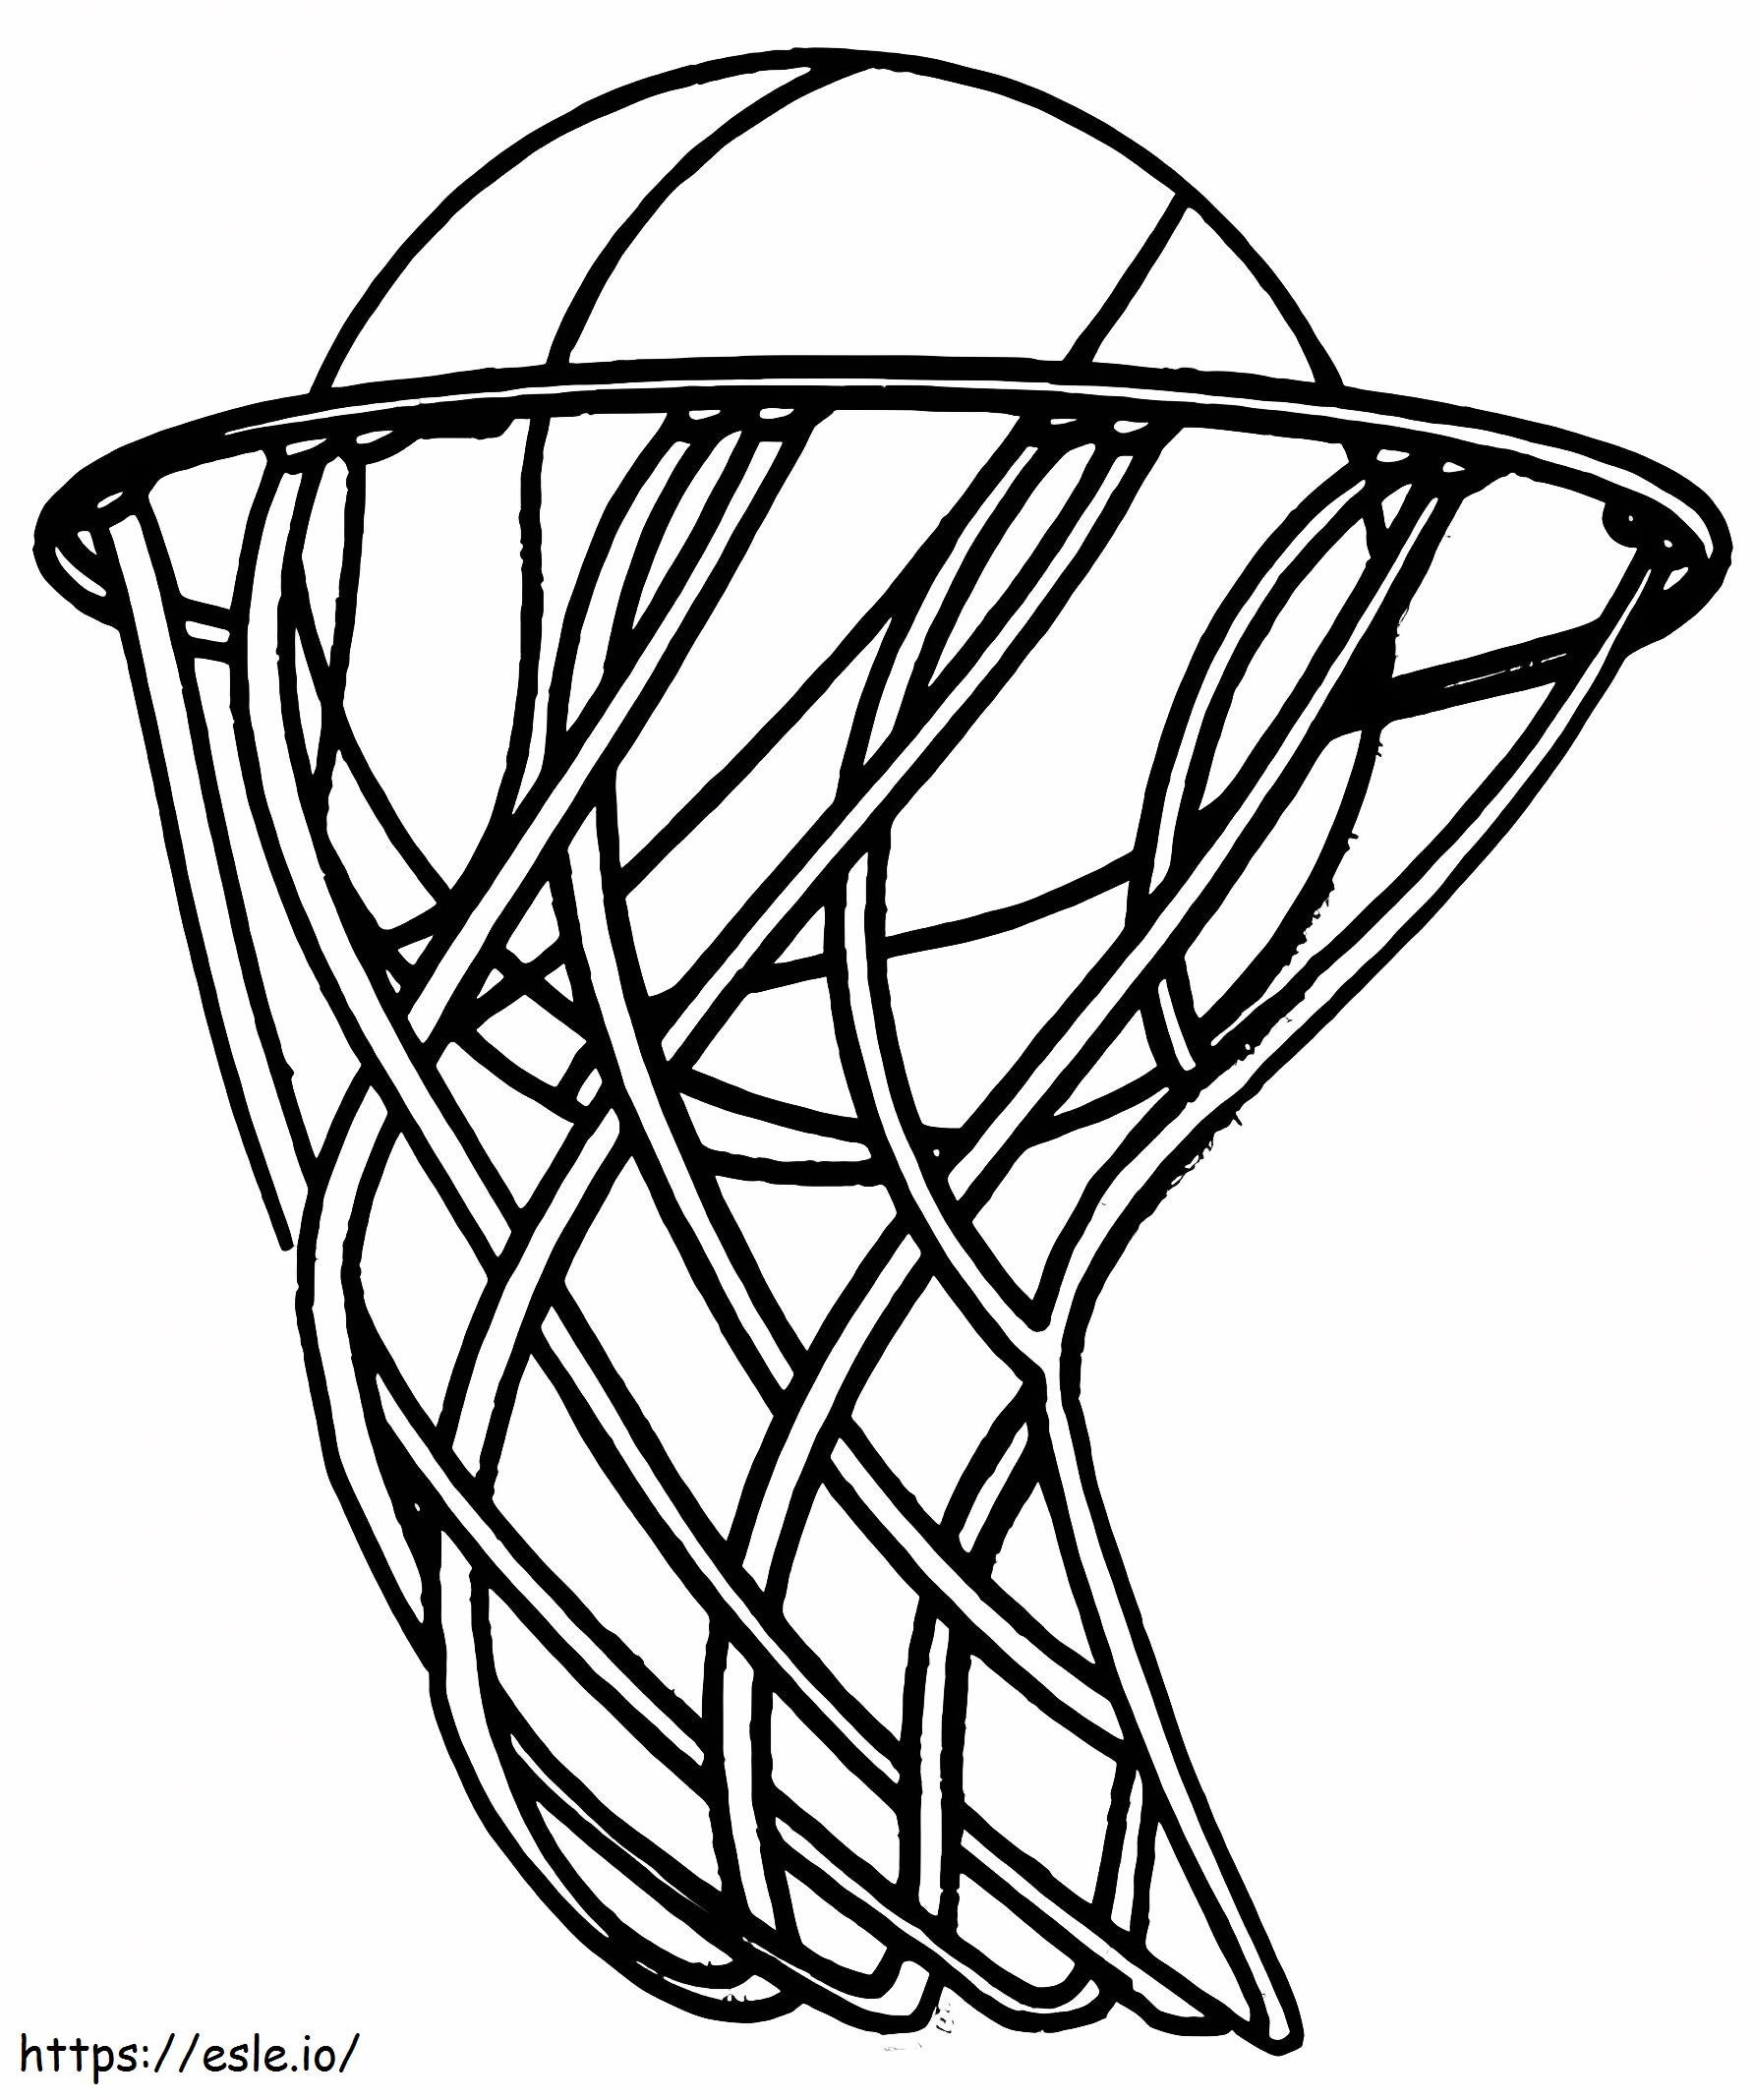 Coloriage 1559609809 Ballon de Basket A4 à imprimer dessin